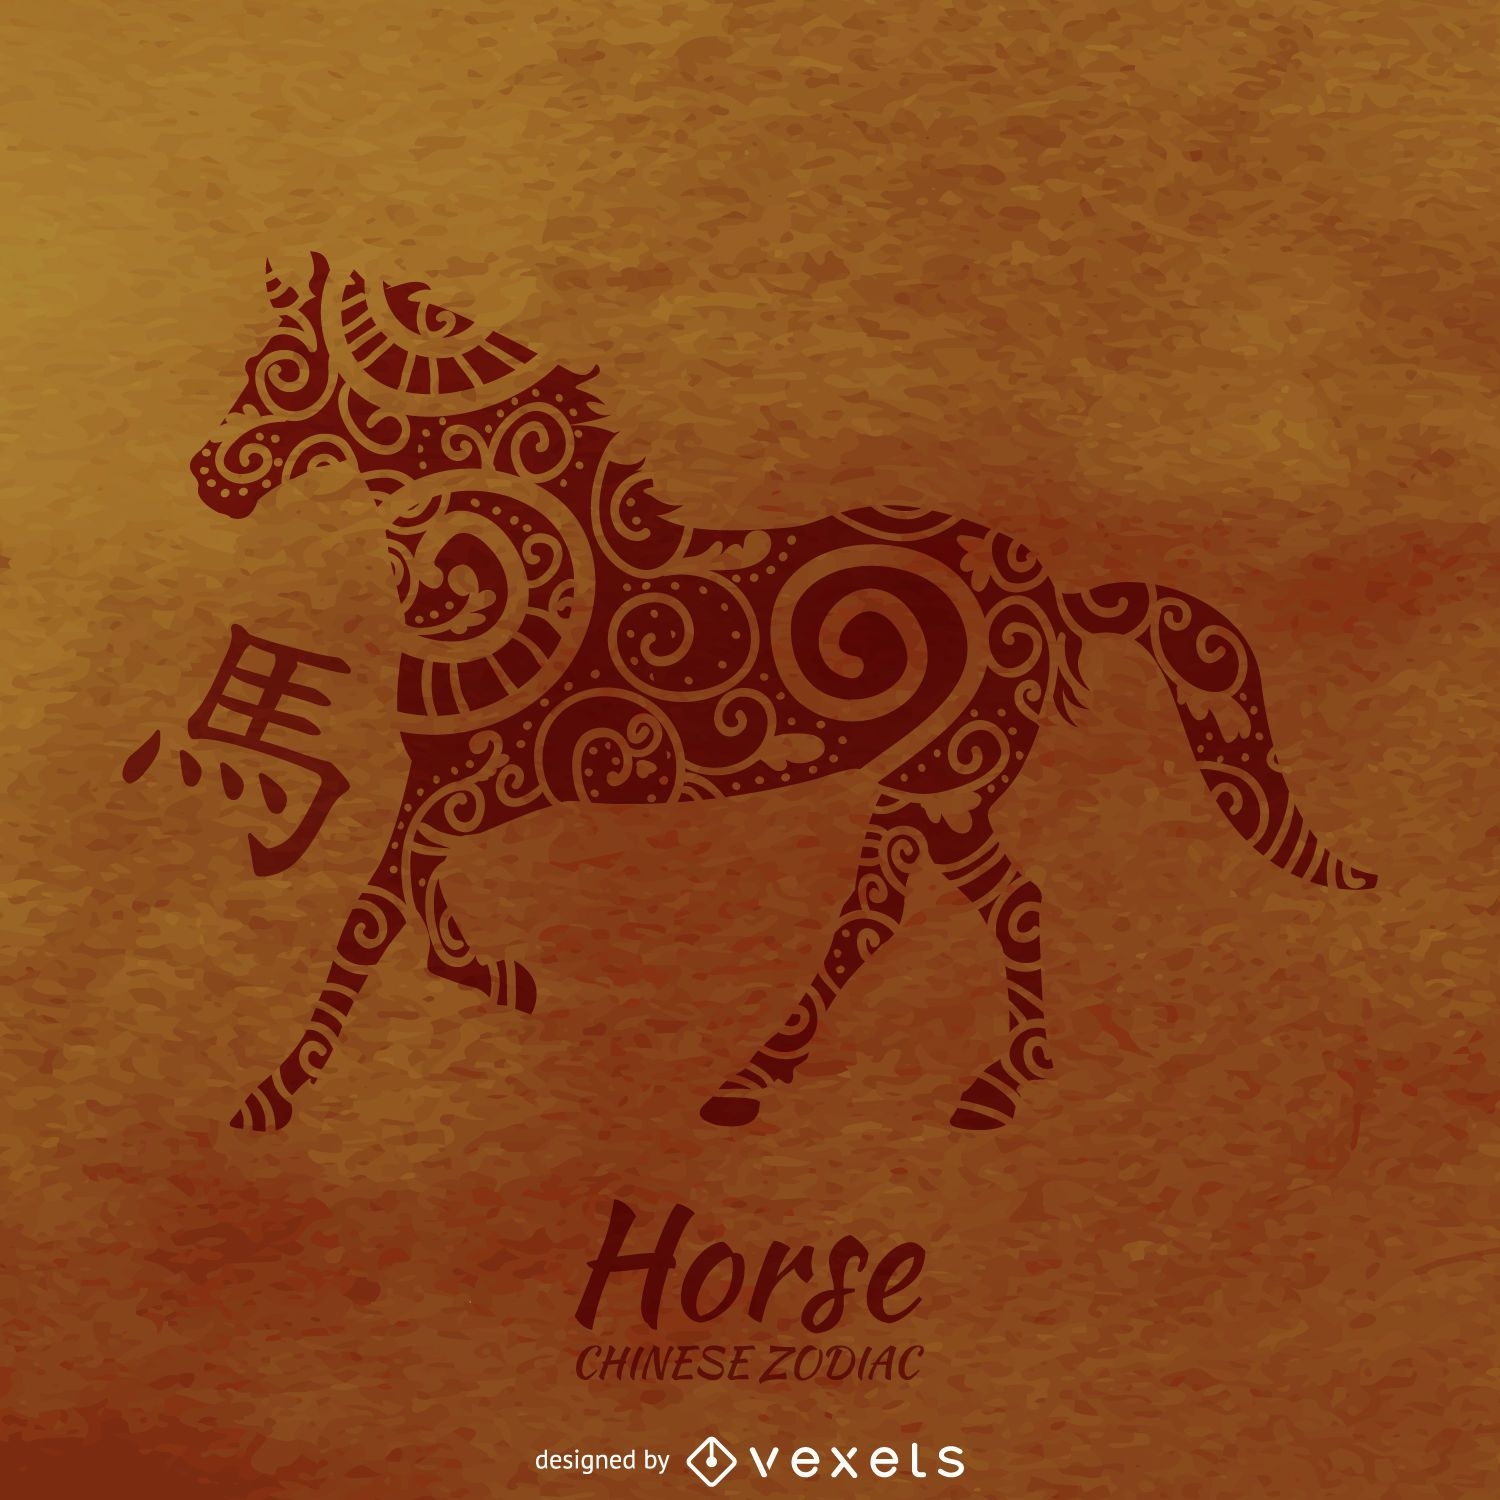 Desenho de cavalo do zodíaco chinês